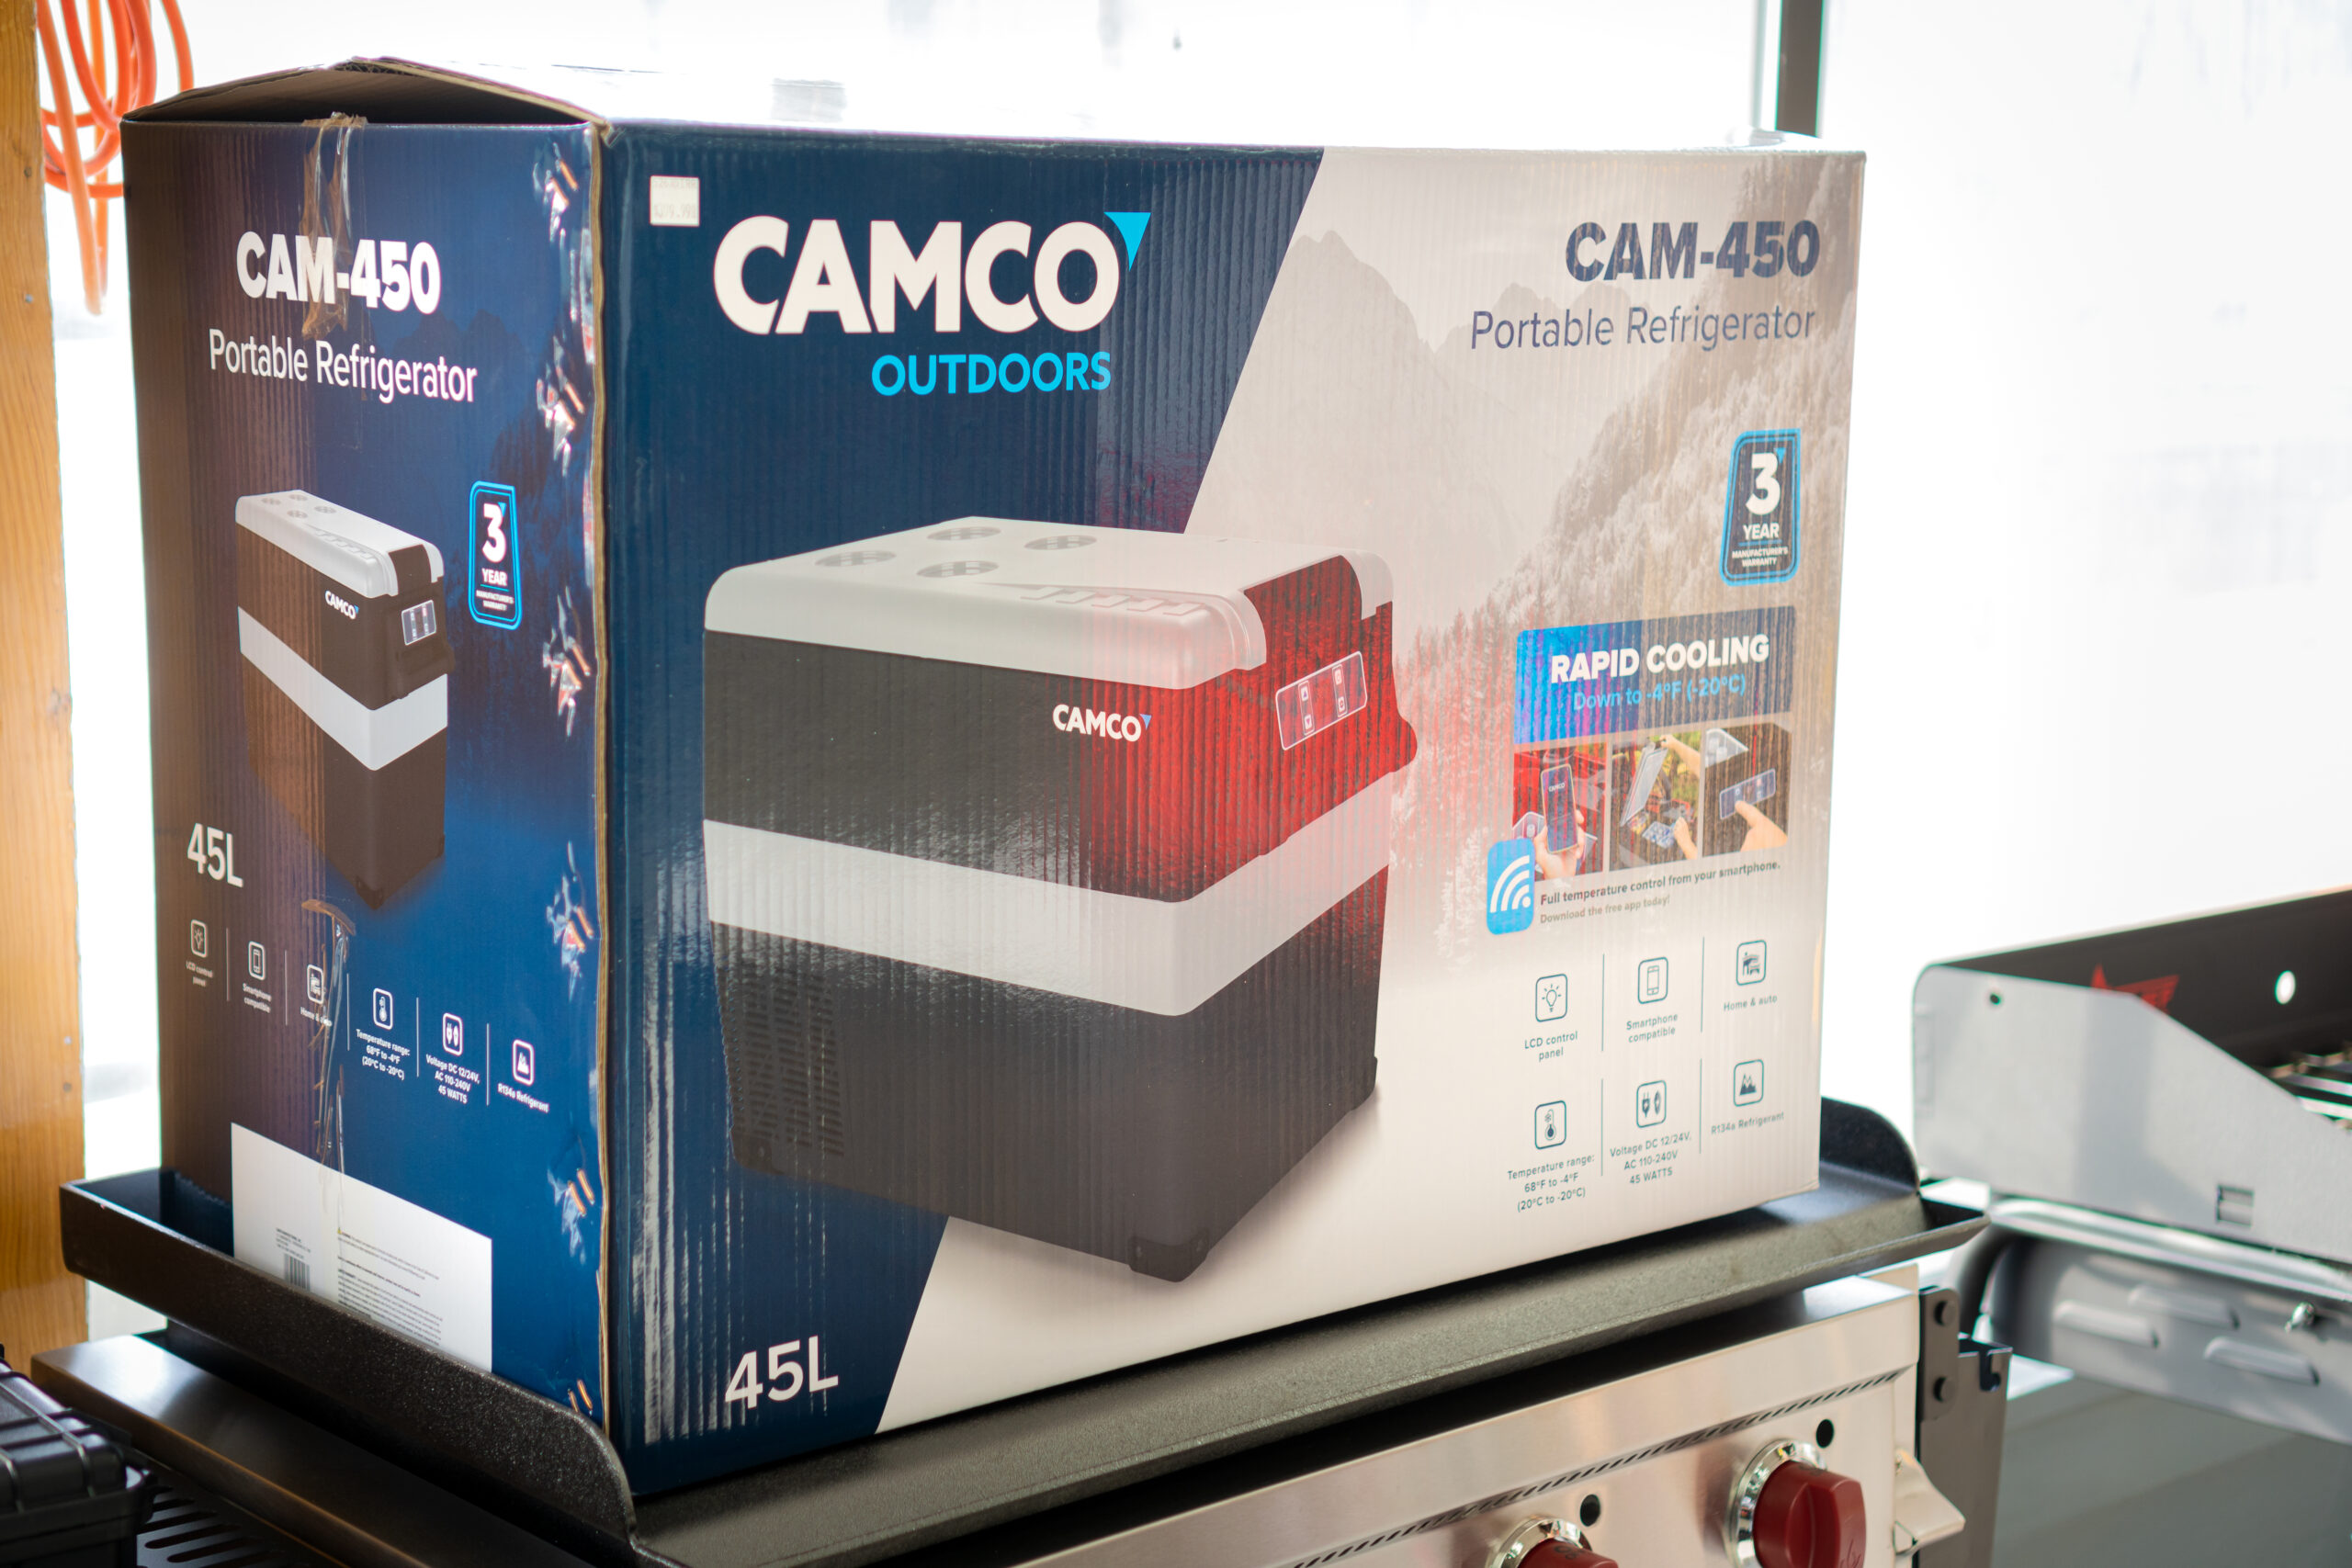 A Camco brand outdoor portable Refrigerator